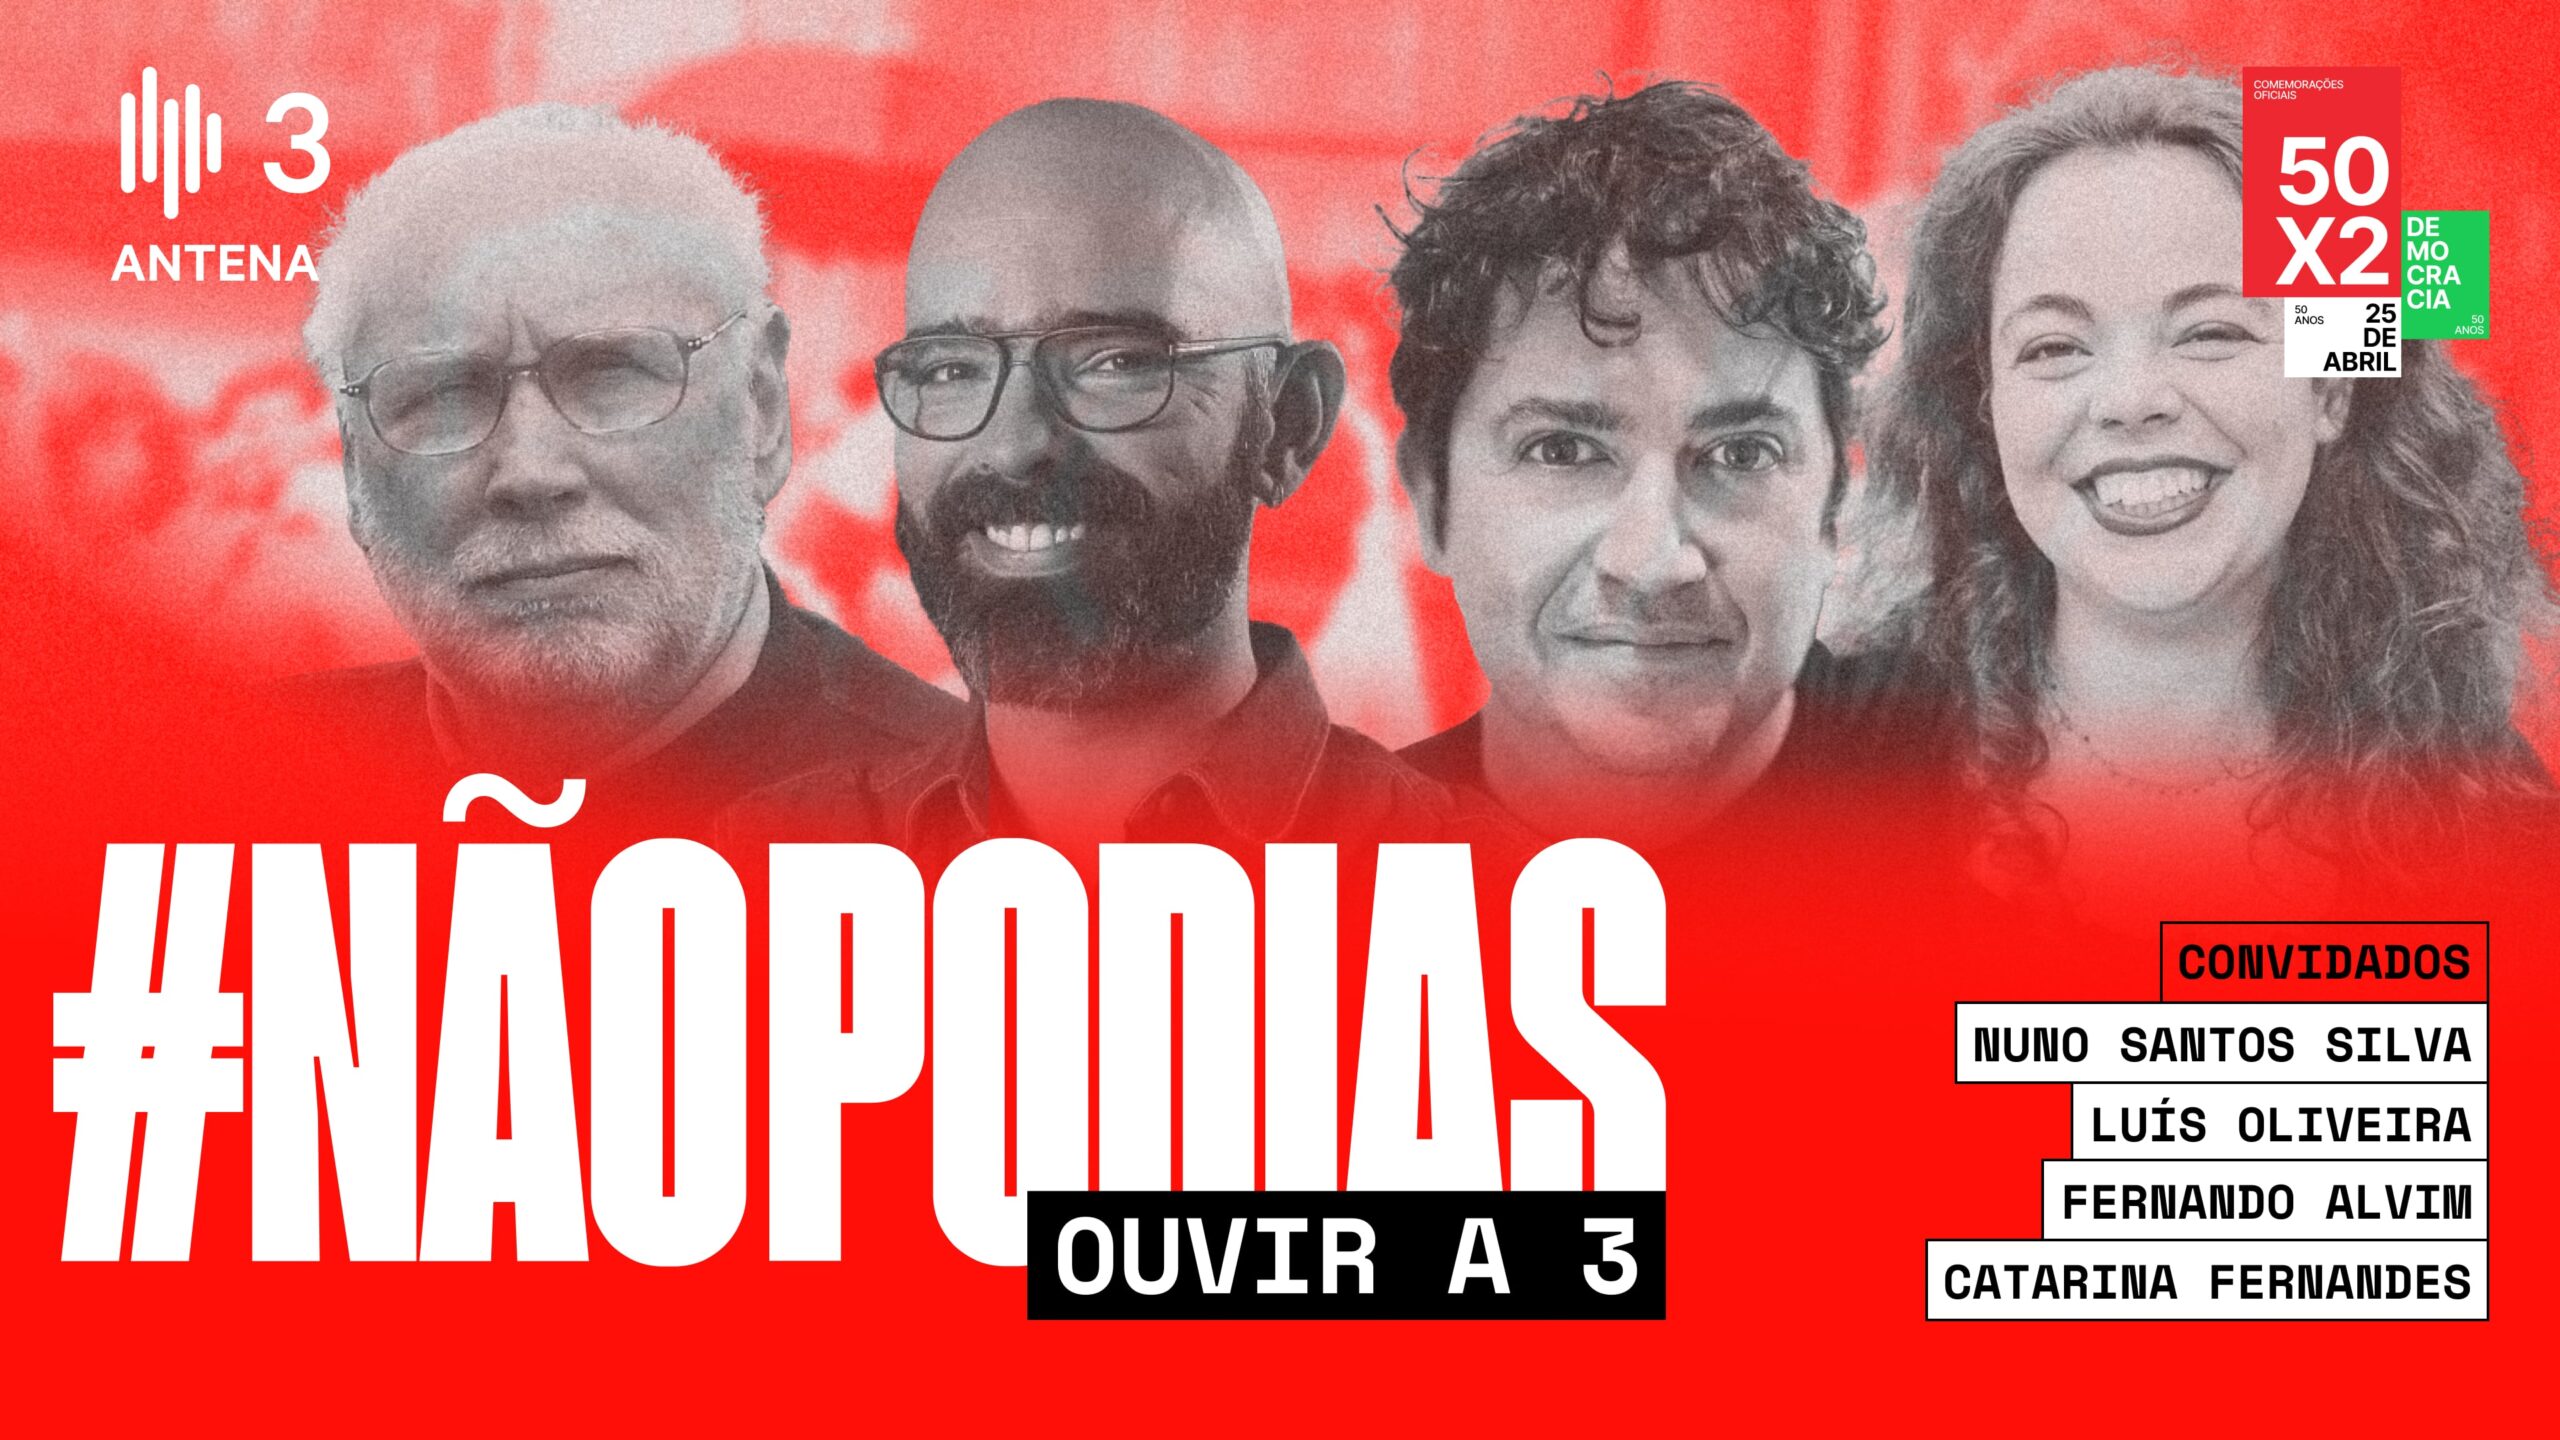 Antena 3 • #NãoPodias Ouvir a 3 - Comissão Comemorativa 50 Anos 25 Abril